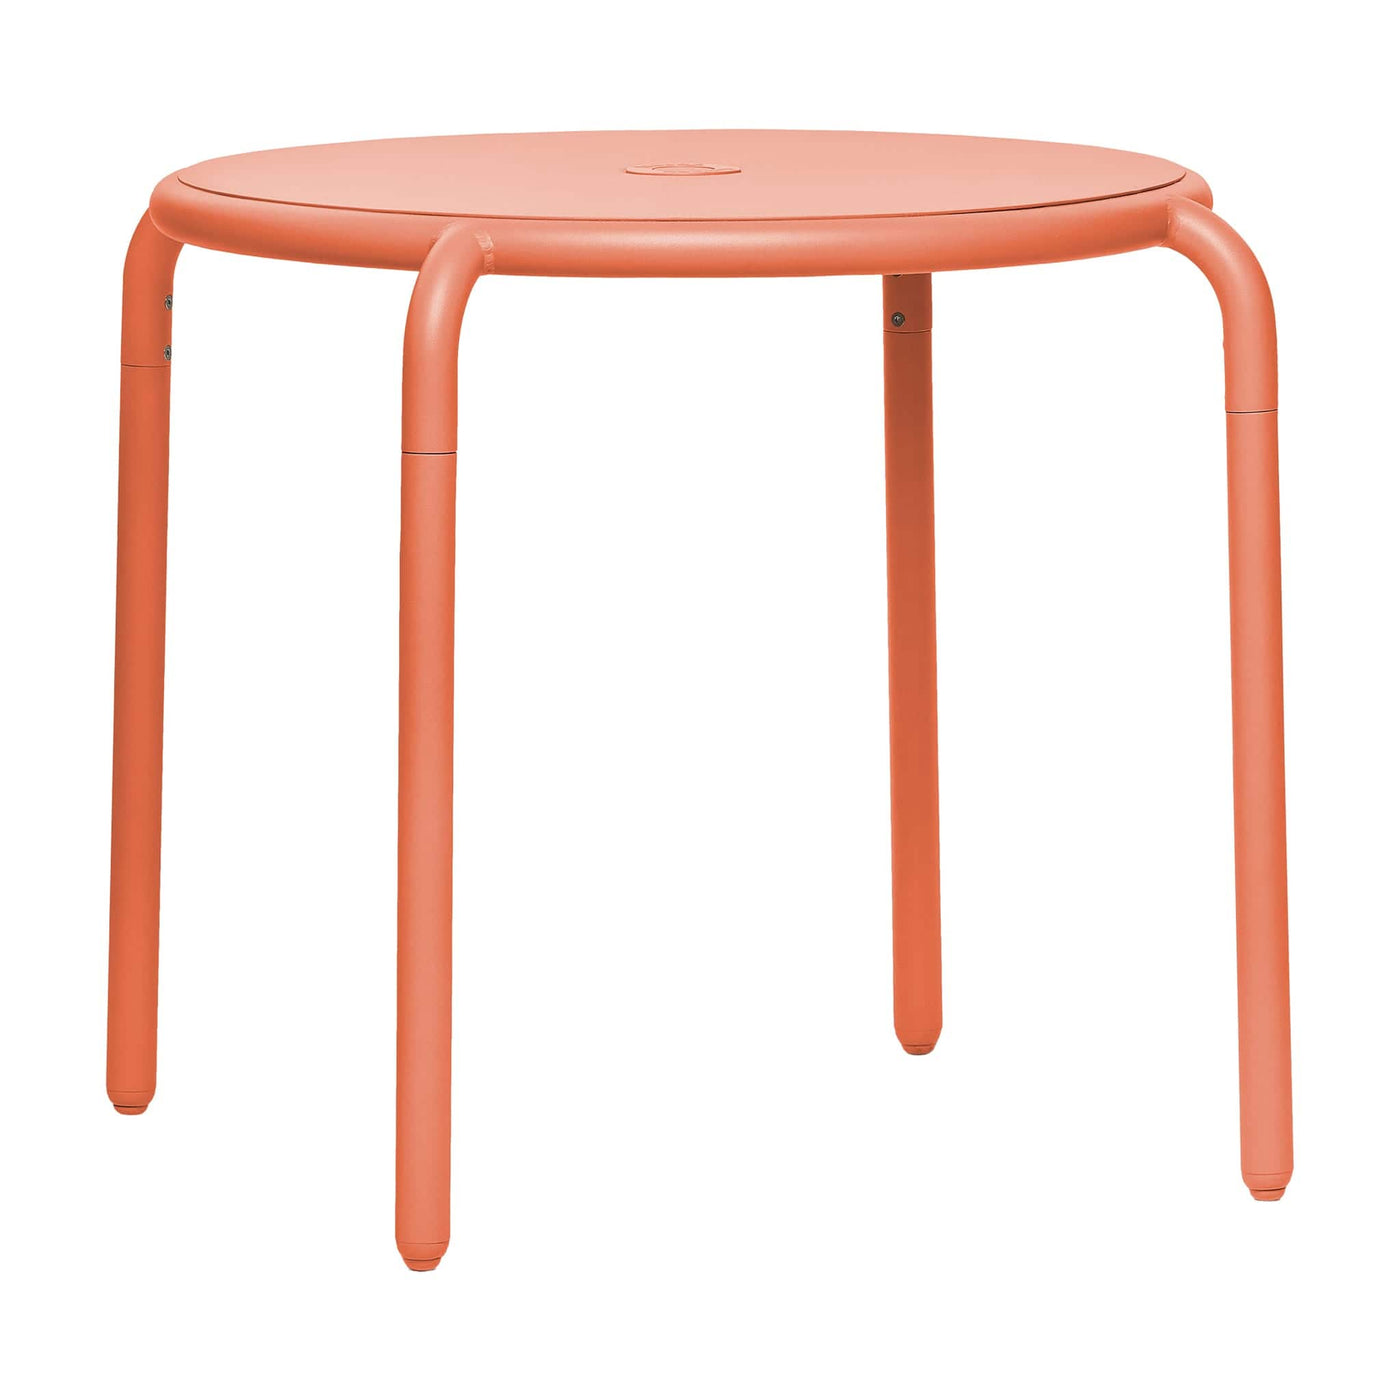 Table bistrot ronde Toní Bistreau de Fatboy : design minimaliste et moderne pour tout style de jardin. Tangerine